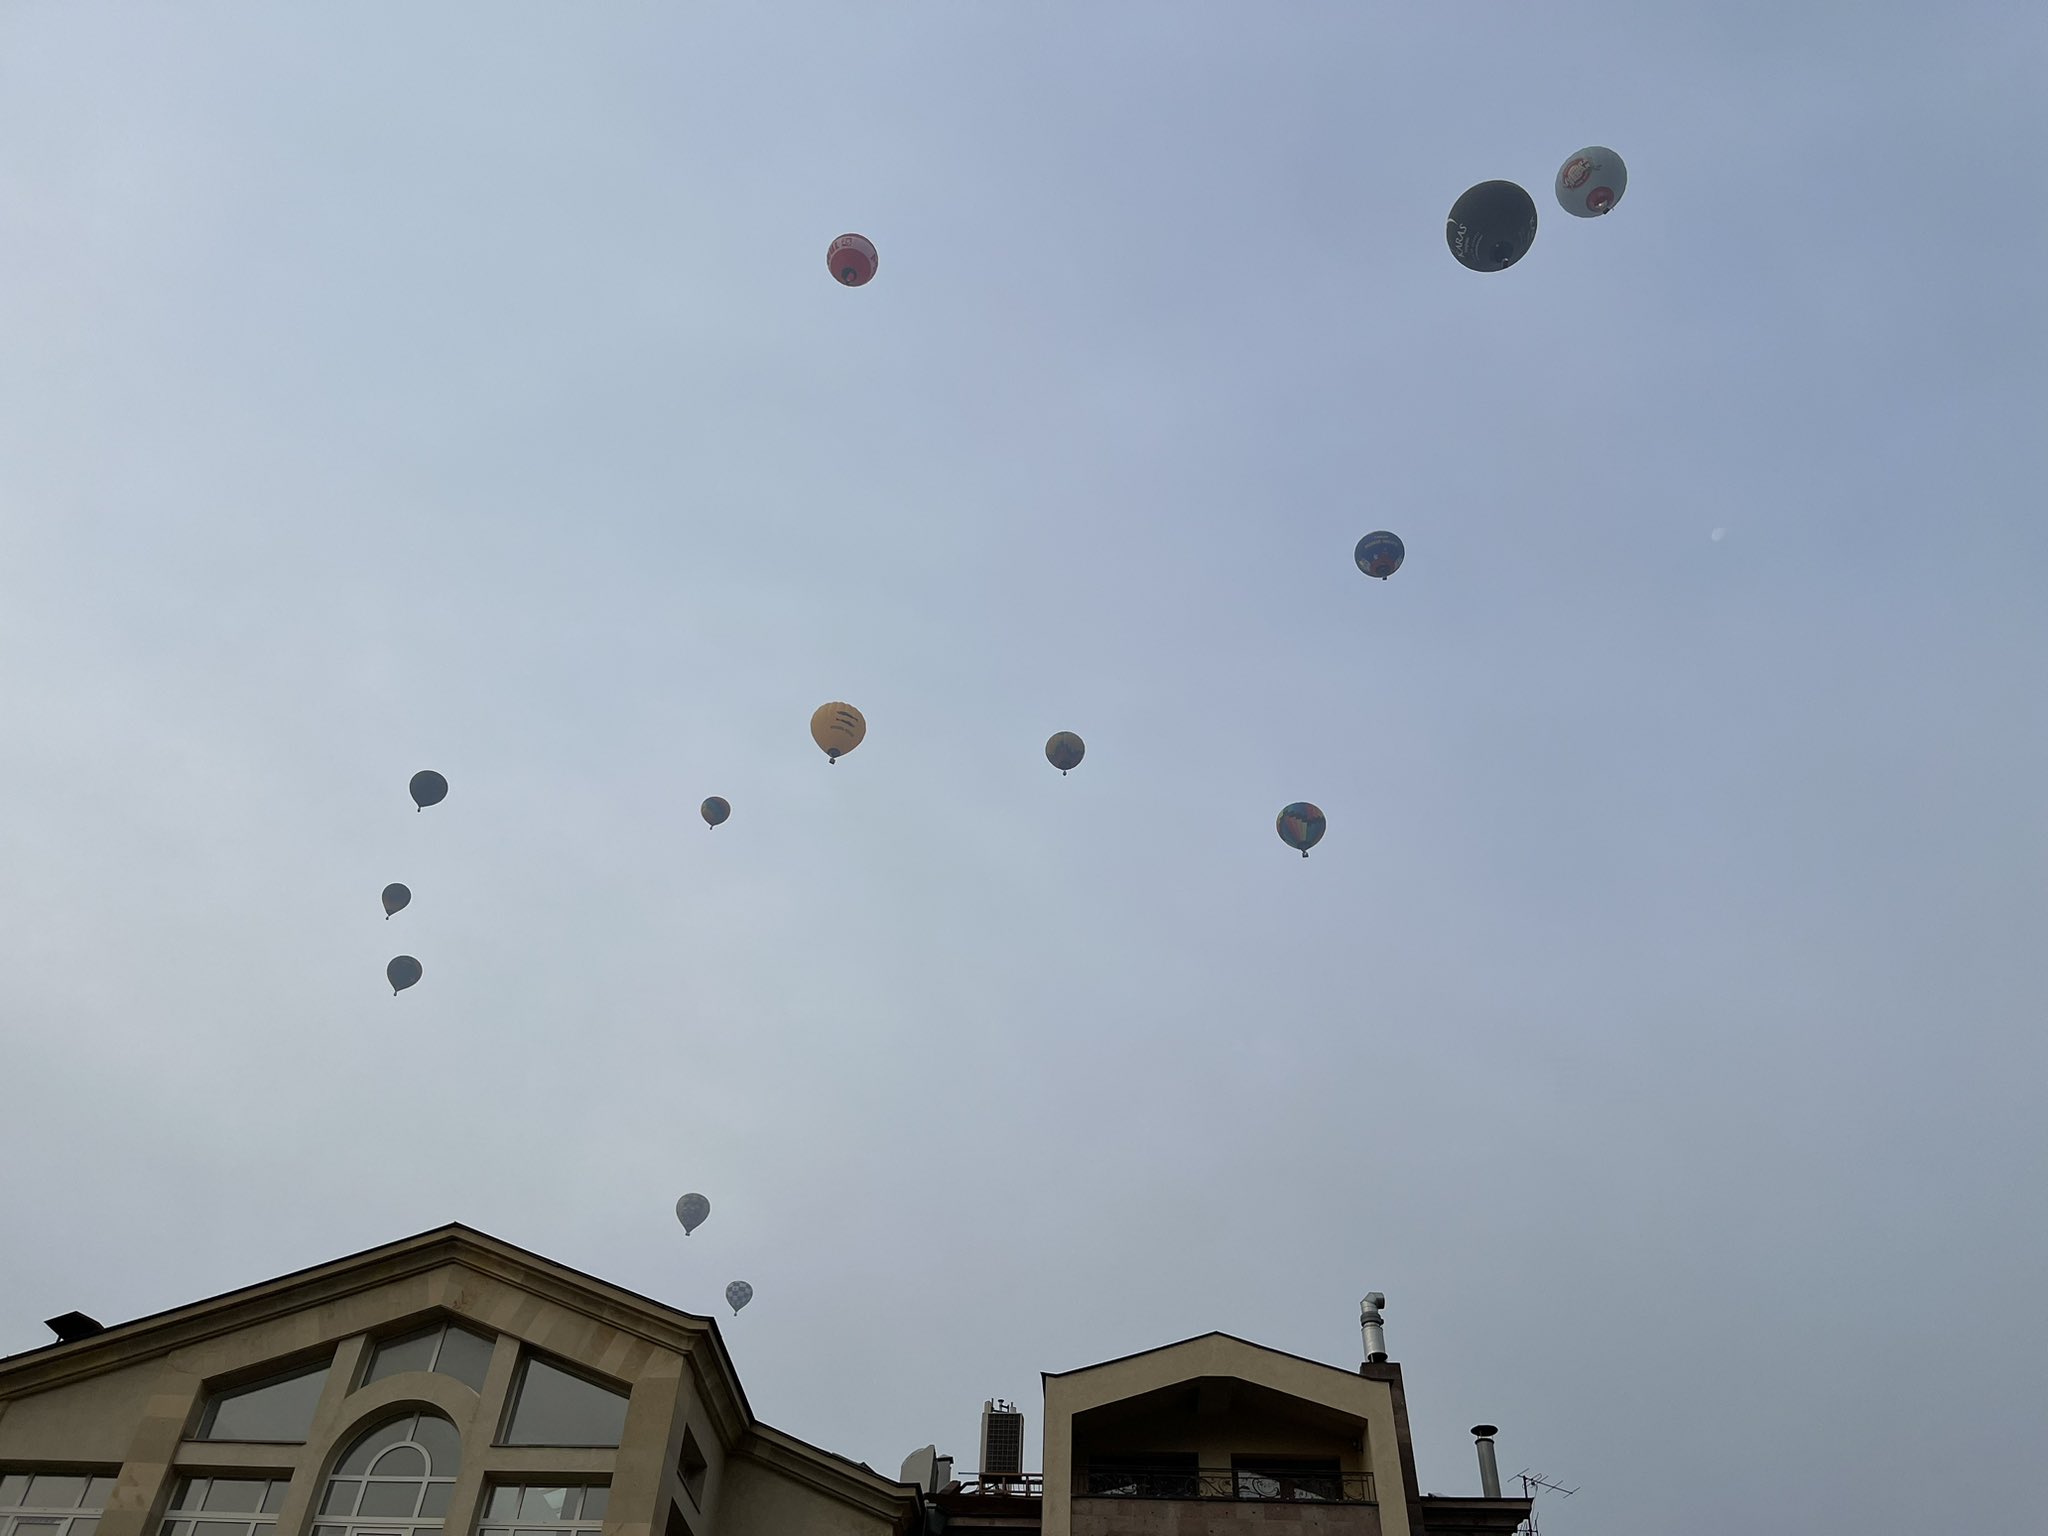 Հիմա վերևում՝ Երևանում. Հայաստանում Նիդերլանդների դեսպանը հիացել է օդագնացության փառատոնի շրջանակում երկնքում հայտնված օդապարիկներով